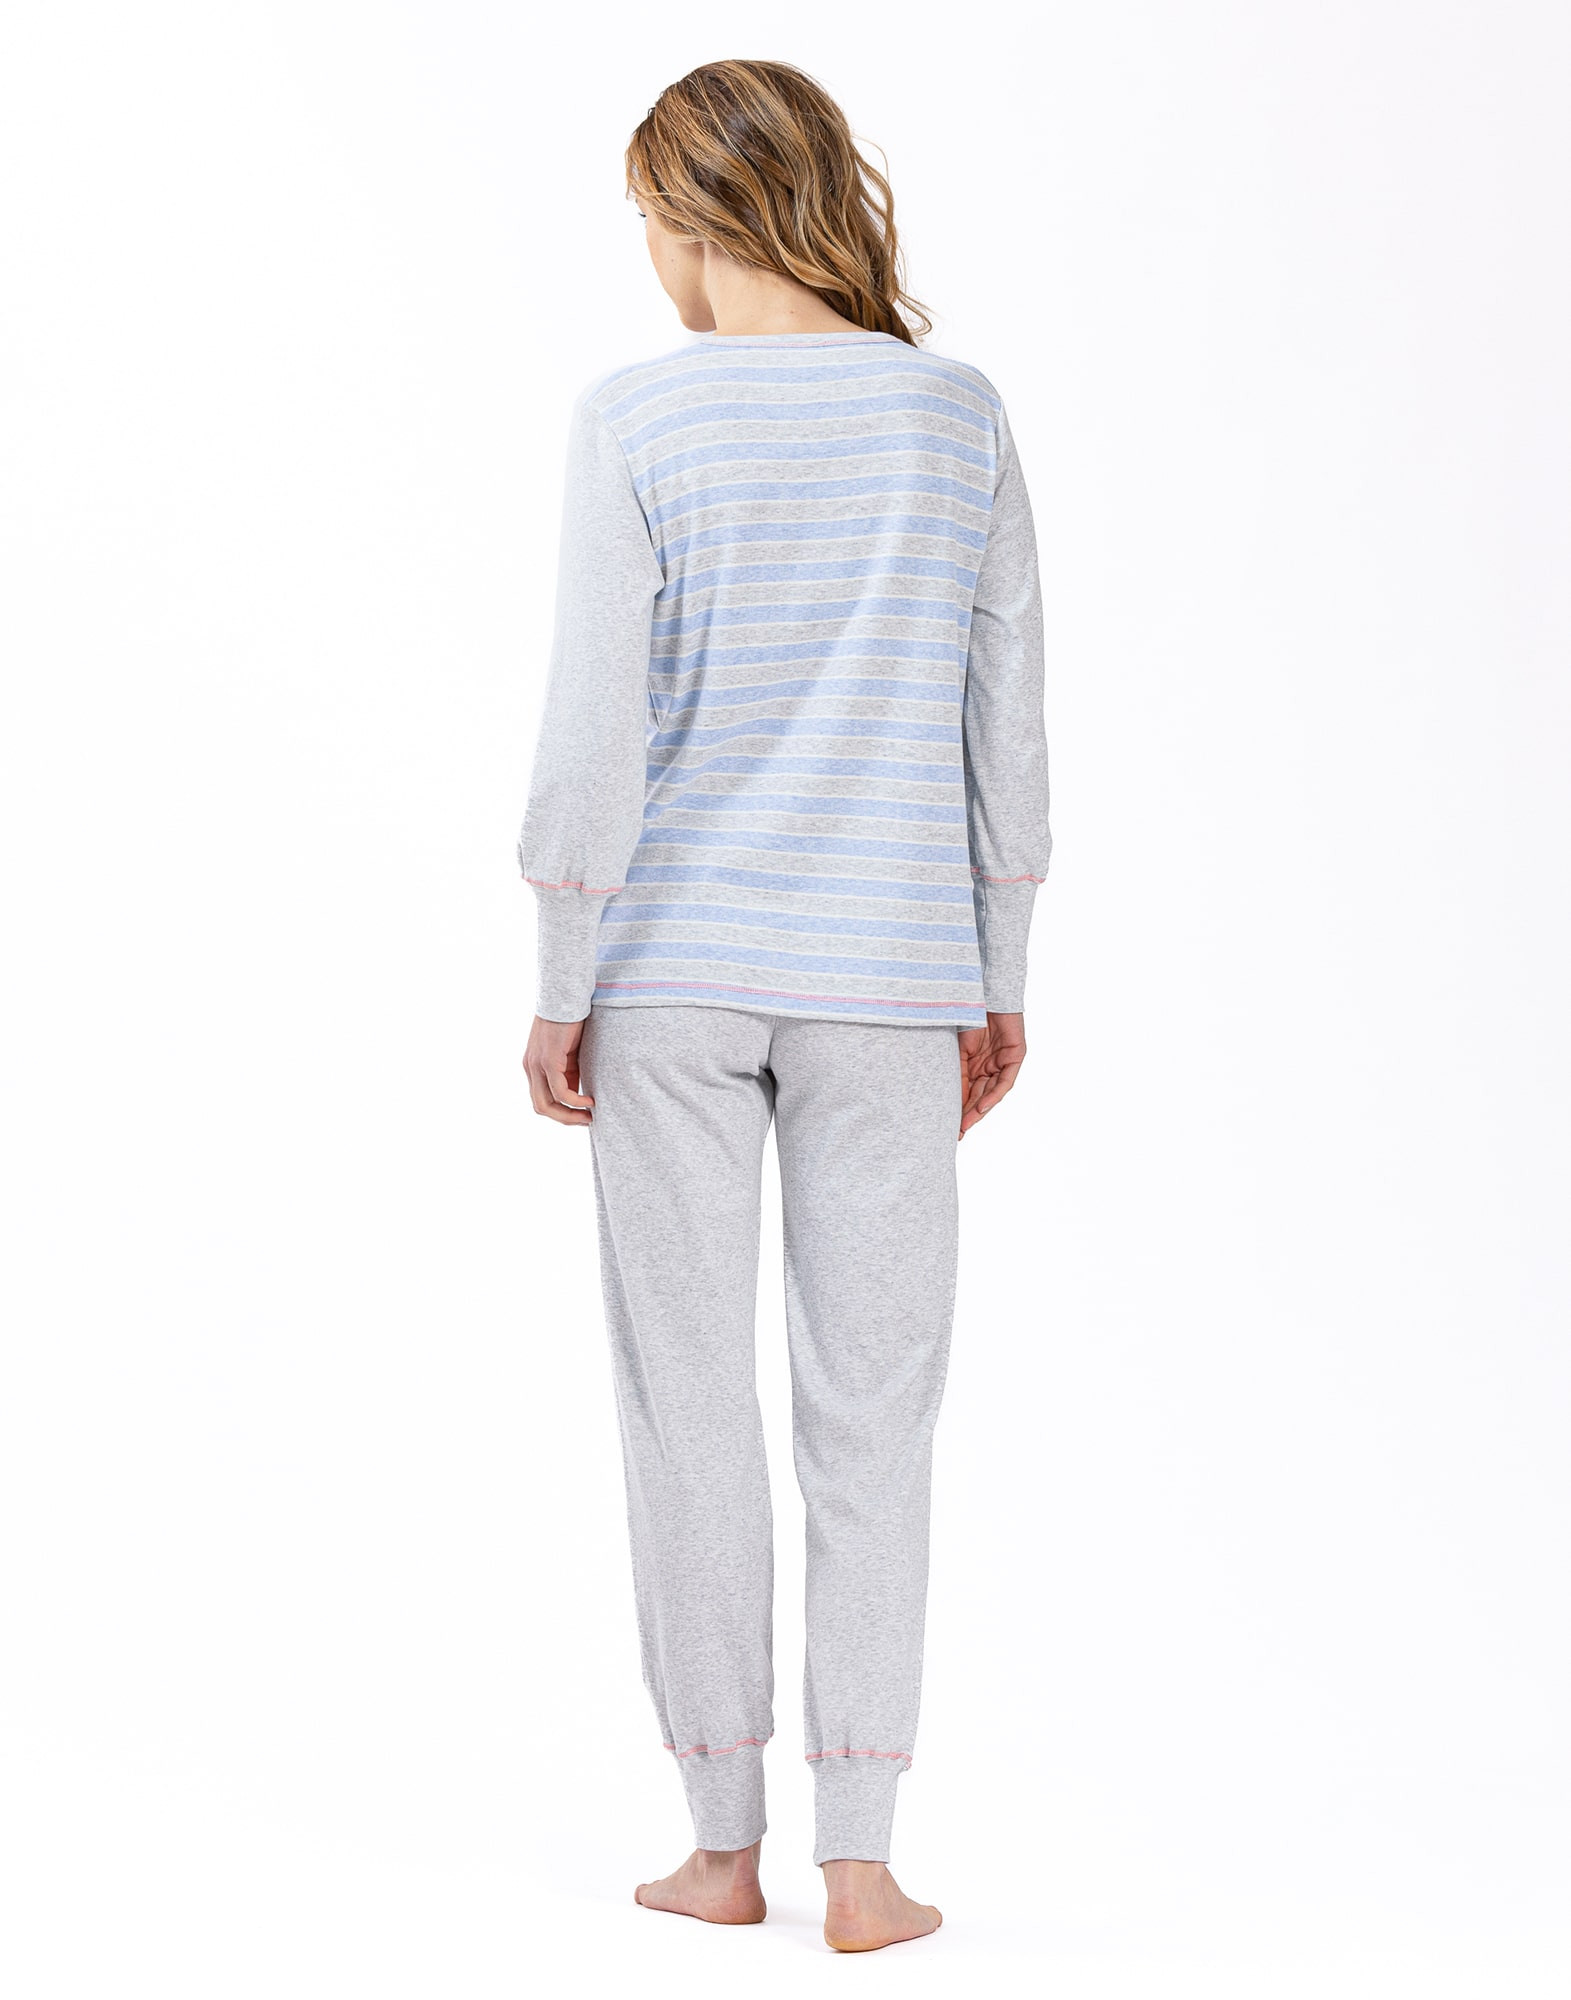 100% cotton interlock pyjamas HYGGE 602 sky blue